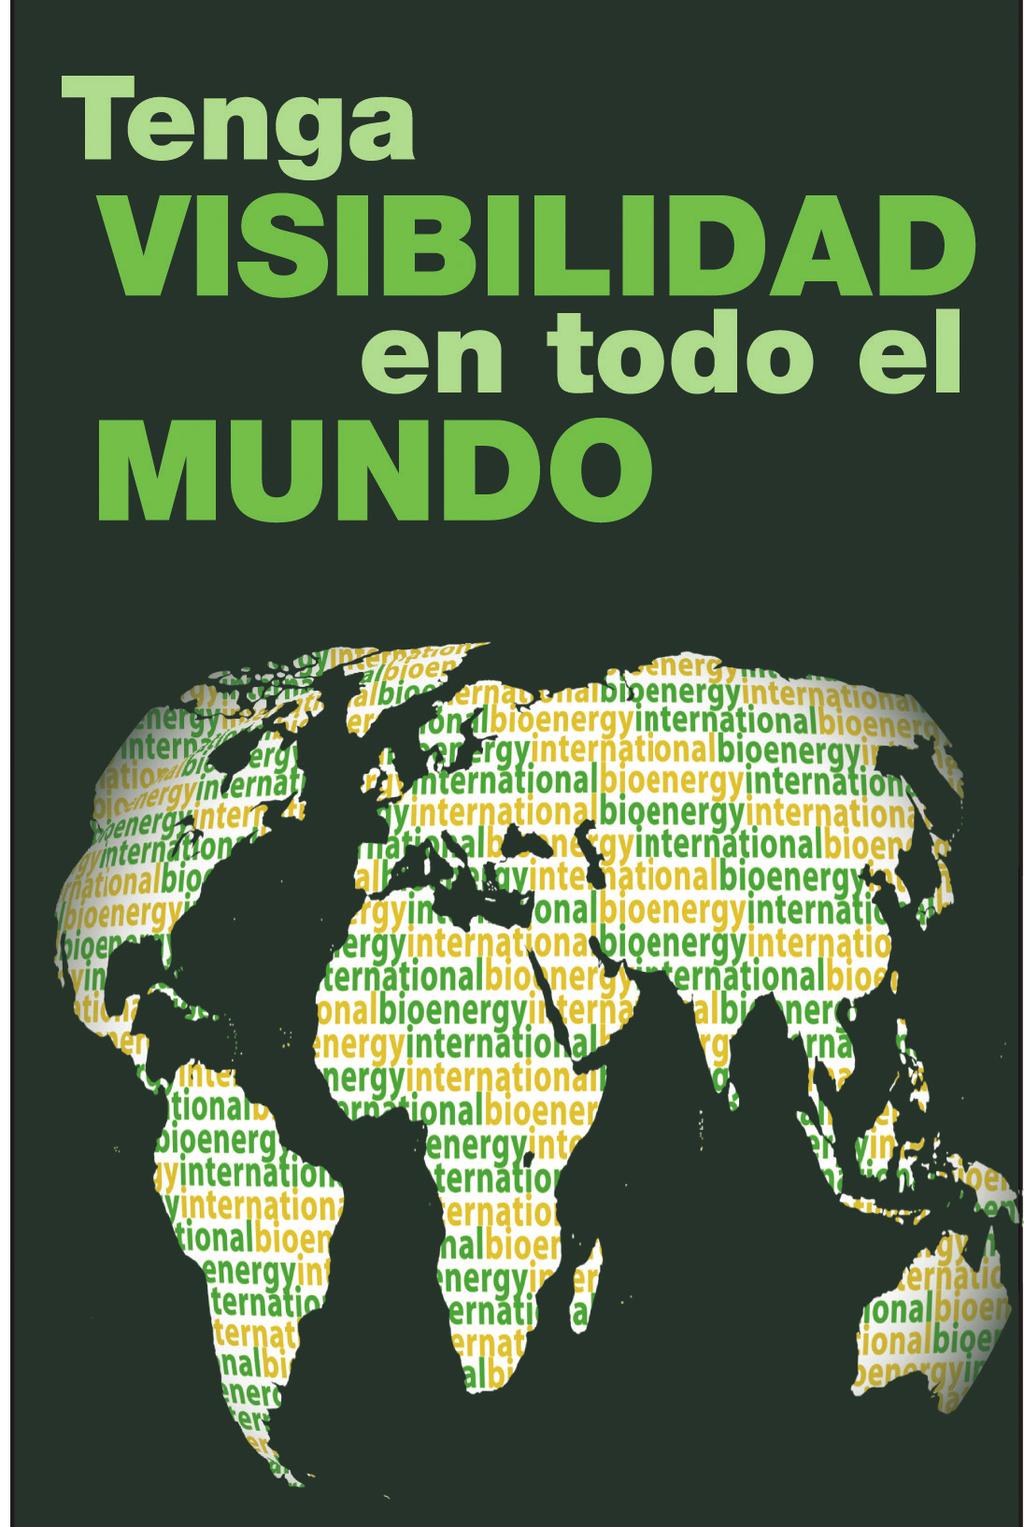 Publicidad en BIE PAPEL Paquetes en ediciones INTERNACIONAL+ESPAÑOL 2018 ANÚNCIESE en Bioenergy International en sus ediciones en ESPAÑOL E INGLÉS (Internacional) + de 150.